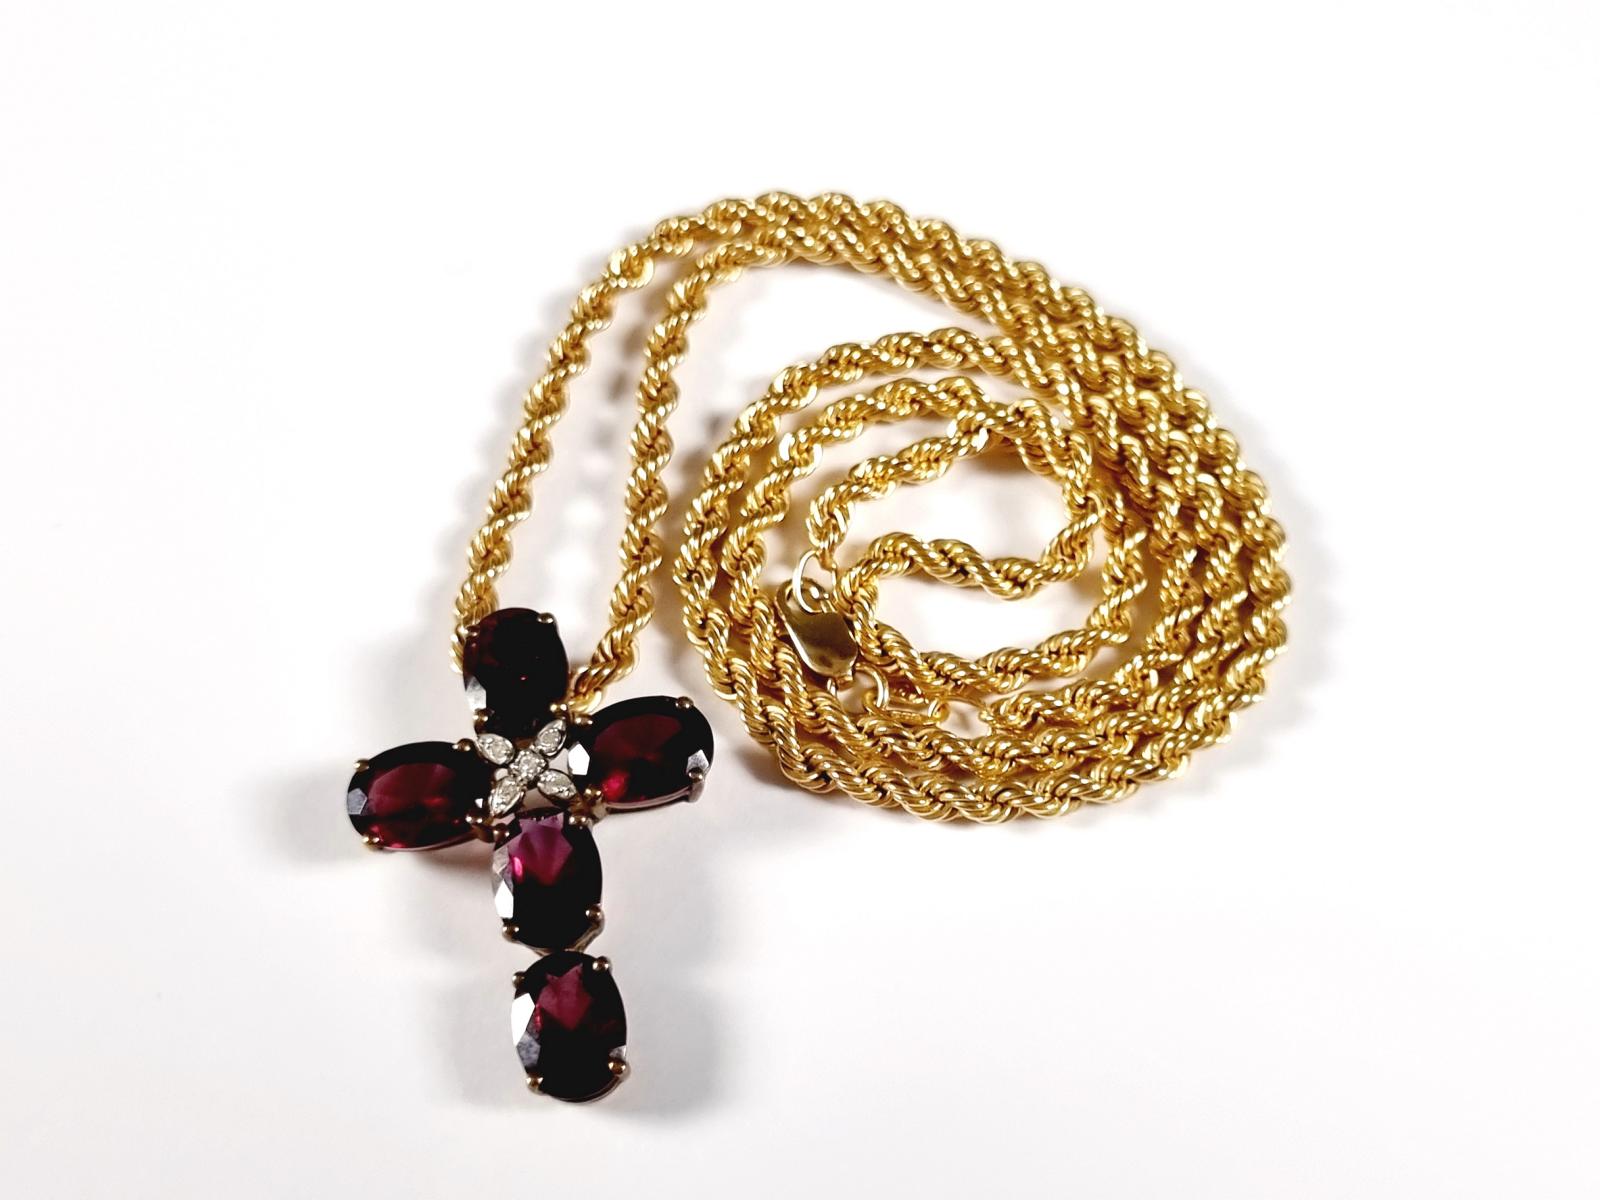 Halskette mit Kreuzanhänger, besetzt mit Diamanten und Amethysten, 8 Karat Gelbgold